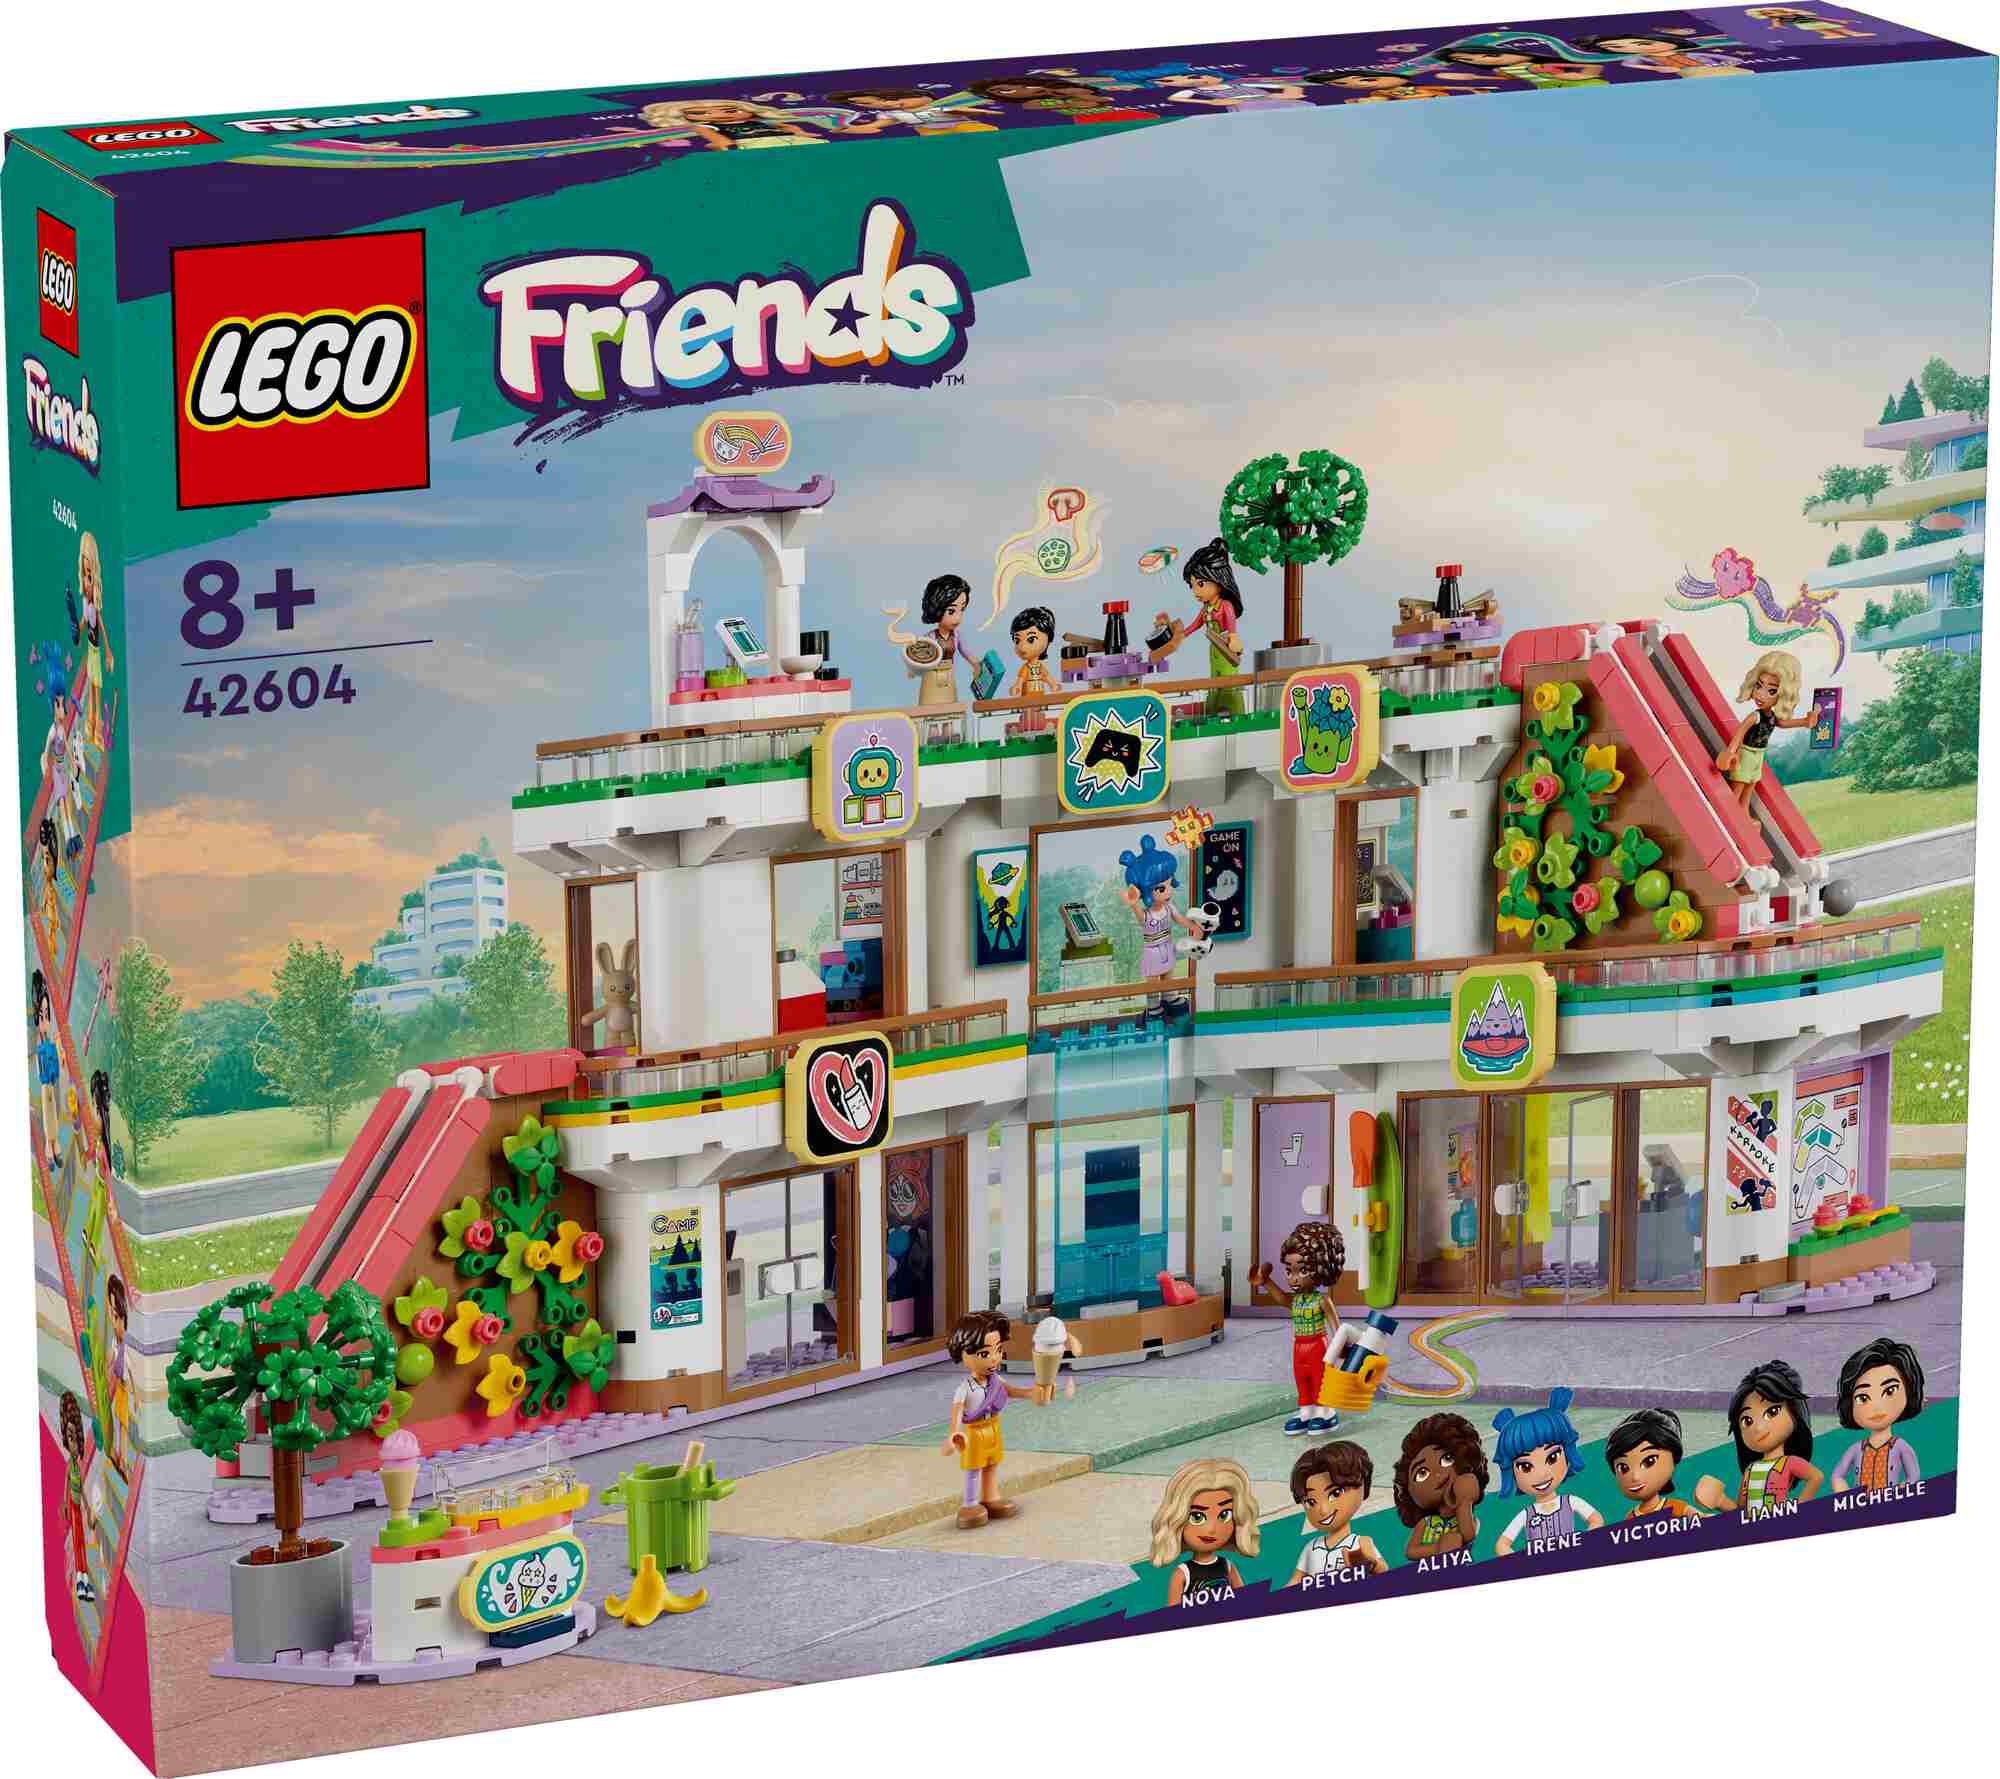 LEGO 42604 Friends Heartlake City Kaufhaus, 7 Spielfiguren, 3 Etagen